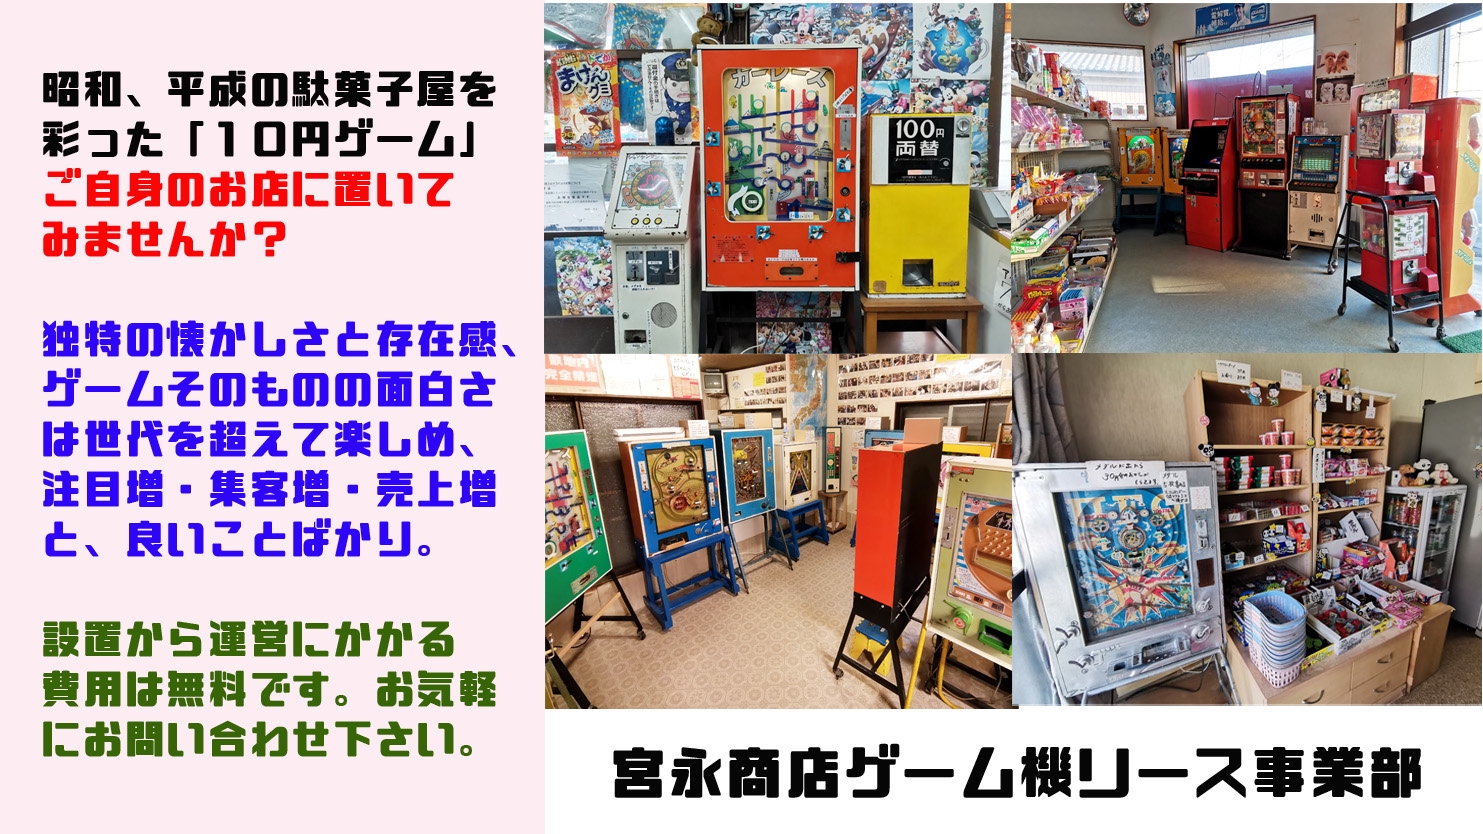 駄菓子屋ゲーム10円ゲーム筐体「ホームランキング」 - テレビゲーム